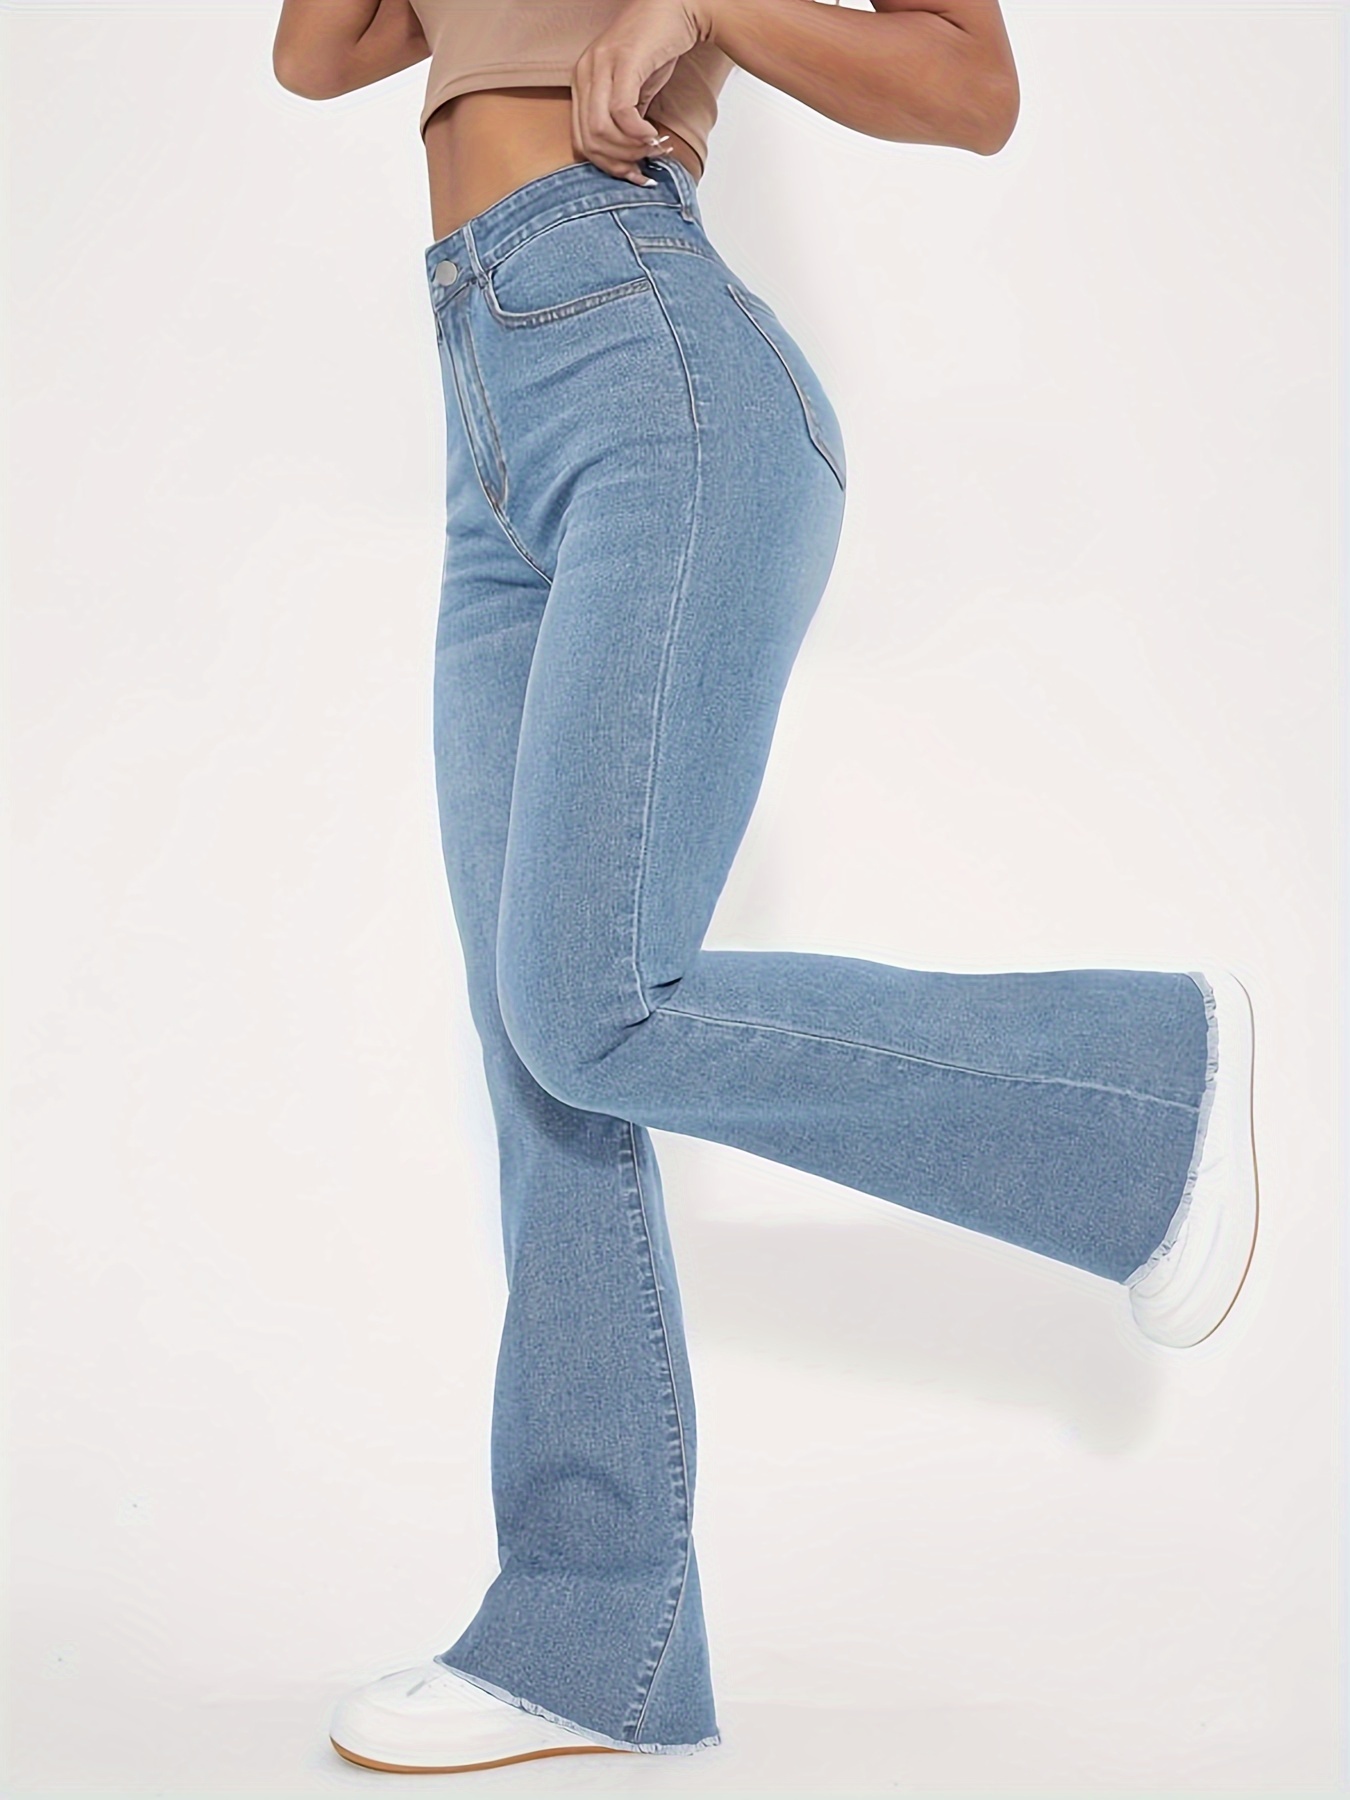 Jeans Acampanados Con Ribete Crudo * Jeans Acampanados Versátiles De  Cintura Alta Y Estiramiento Alto, Jeans Y Ropa De Mujer